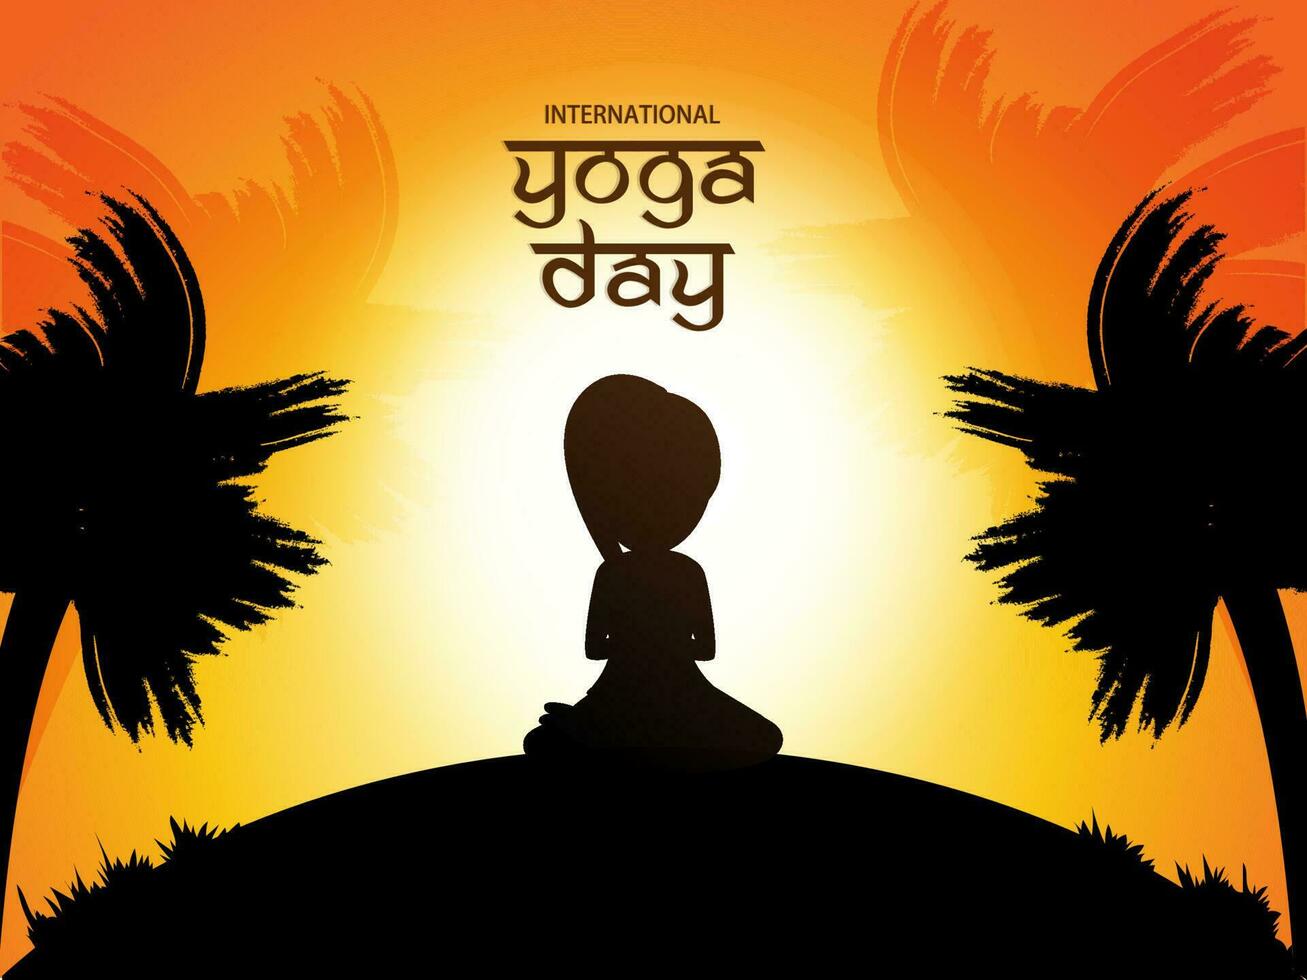 póster o bandera diseño para internacional yoga día. creativo texto de yoga día con silueta de un mujer en yoga postura. vector